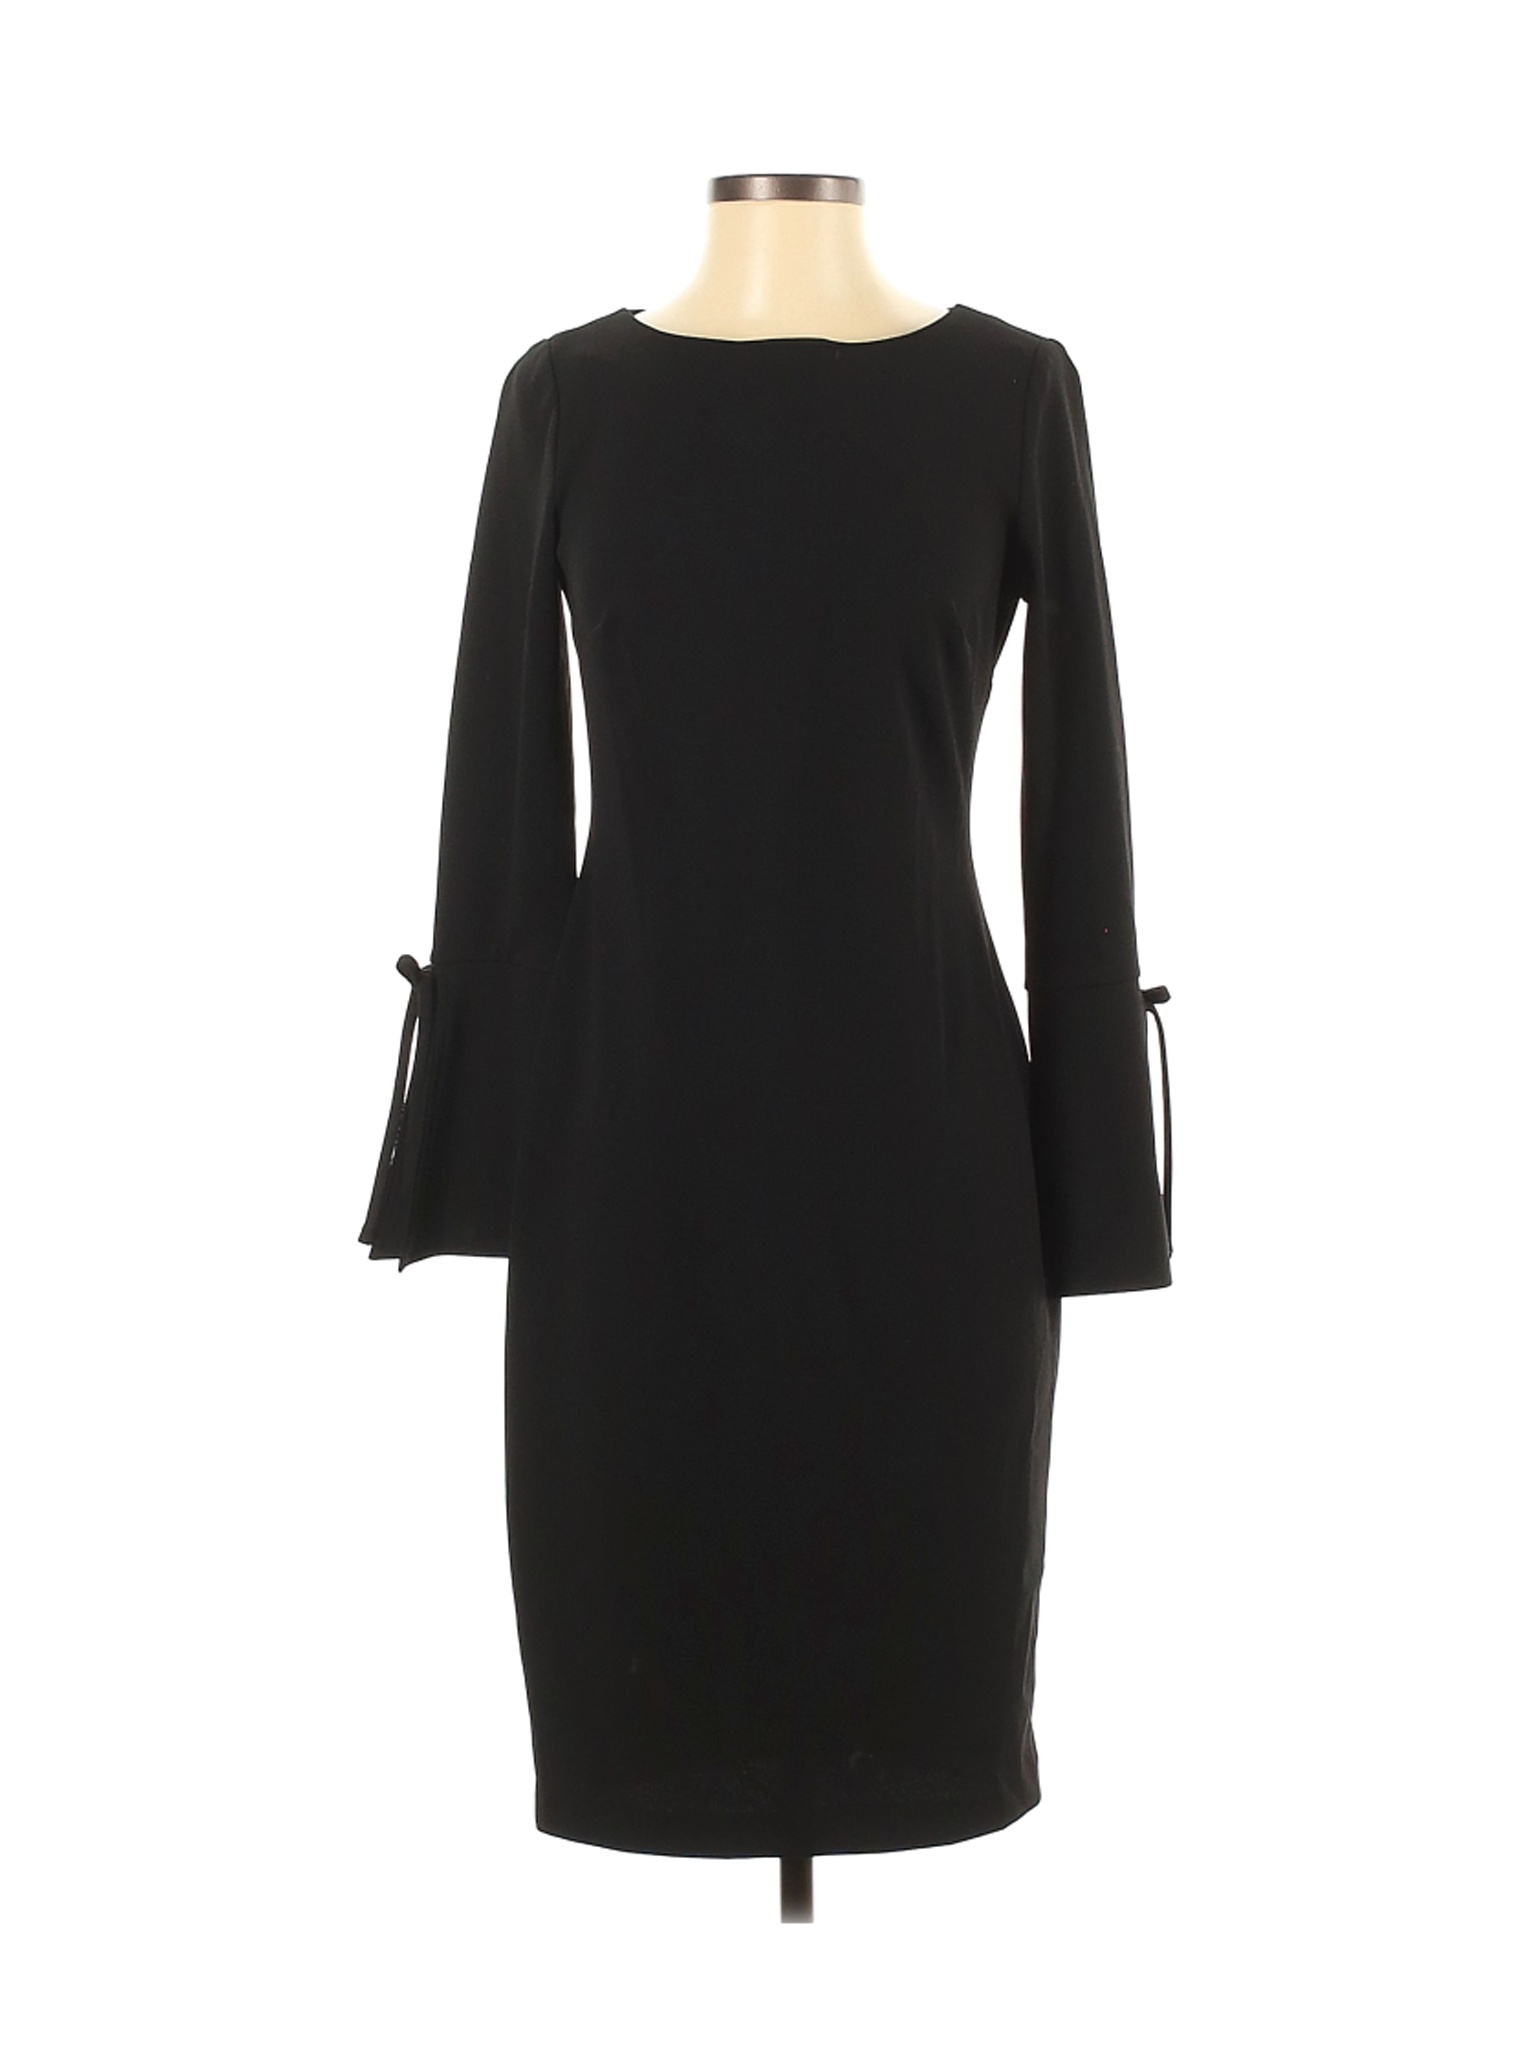 Calvin Klein Women Black Cocktail Dress 4 | eBay